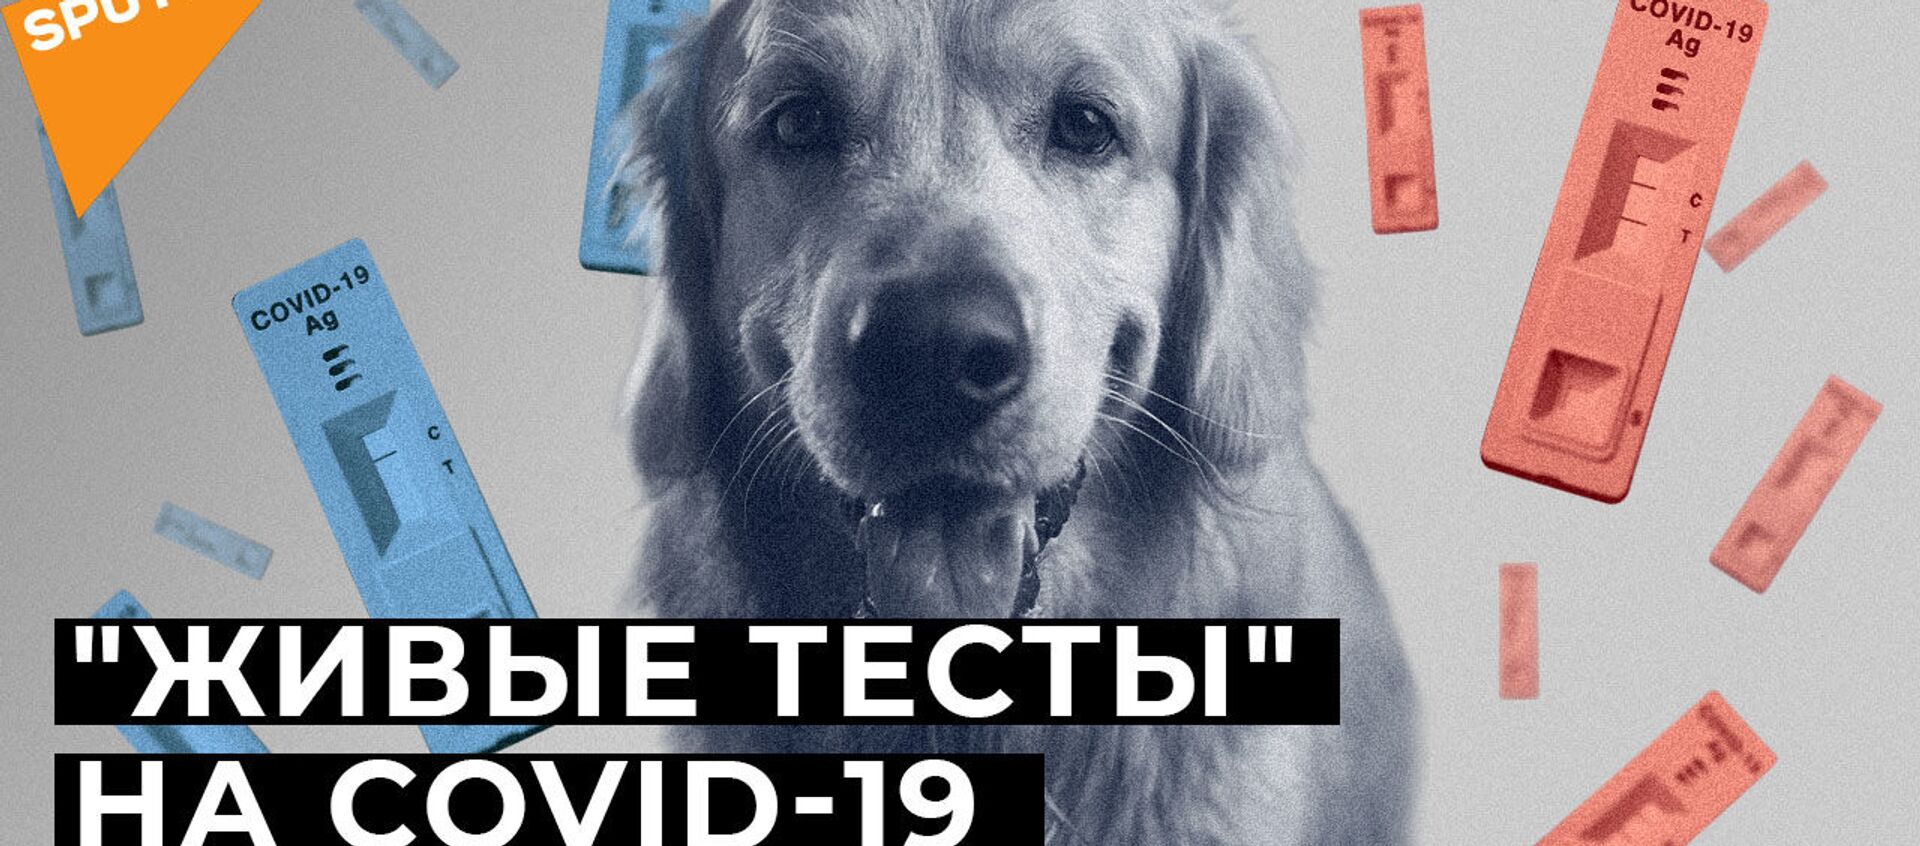 Нюх на COVID-19: могут ли собаки распознать зараженных коронавирусом? - Sputnik Абхазия, 1920, 21.01.2021